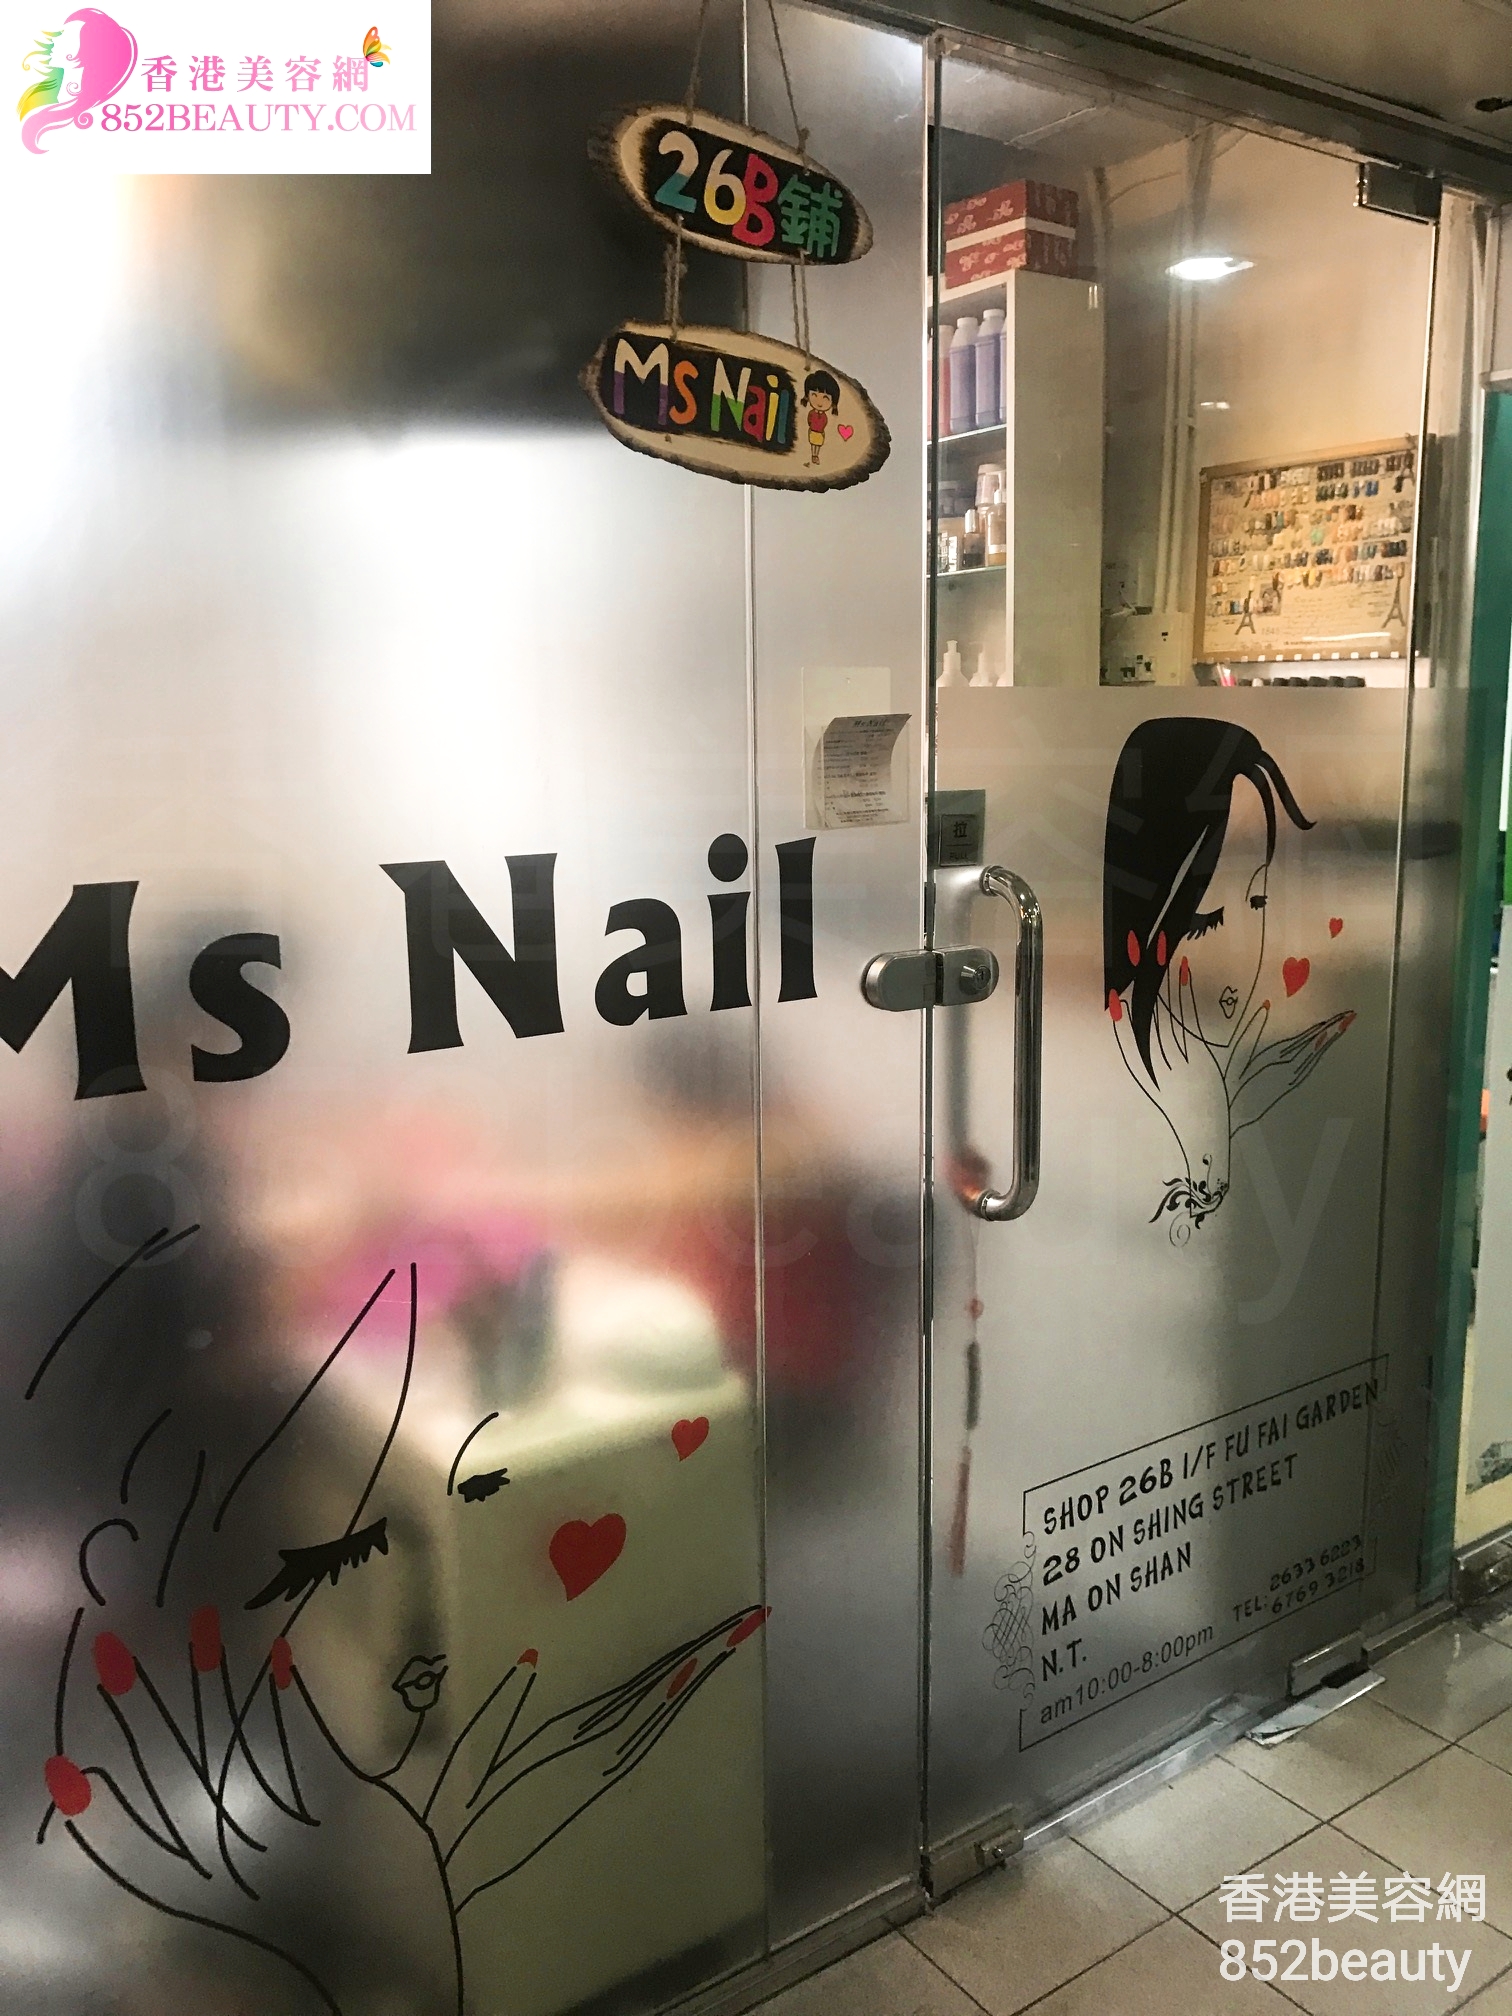 Manicure: Ms Nail